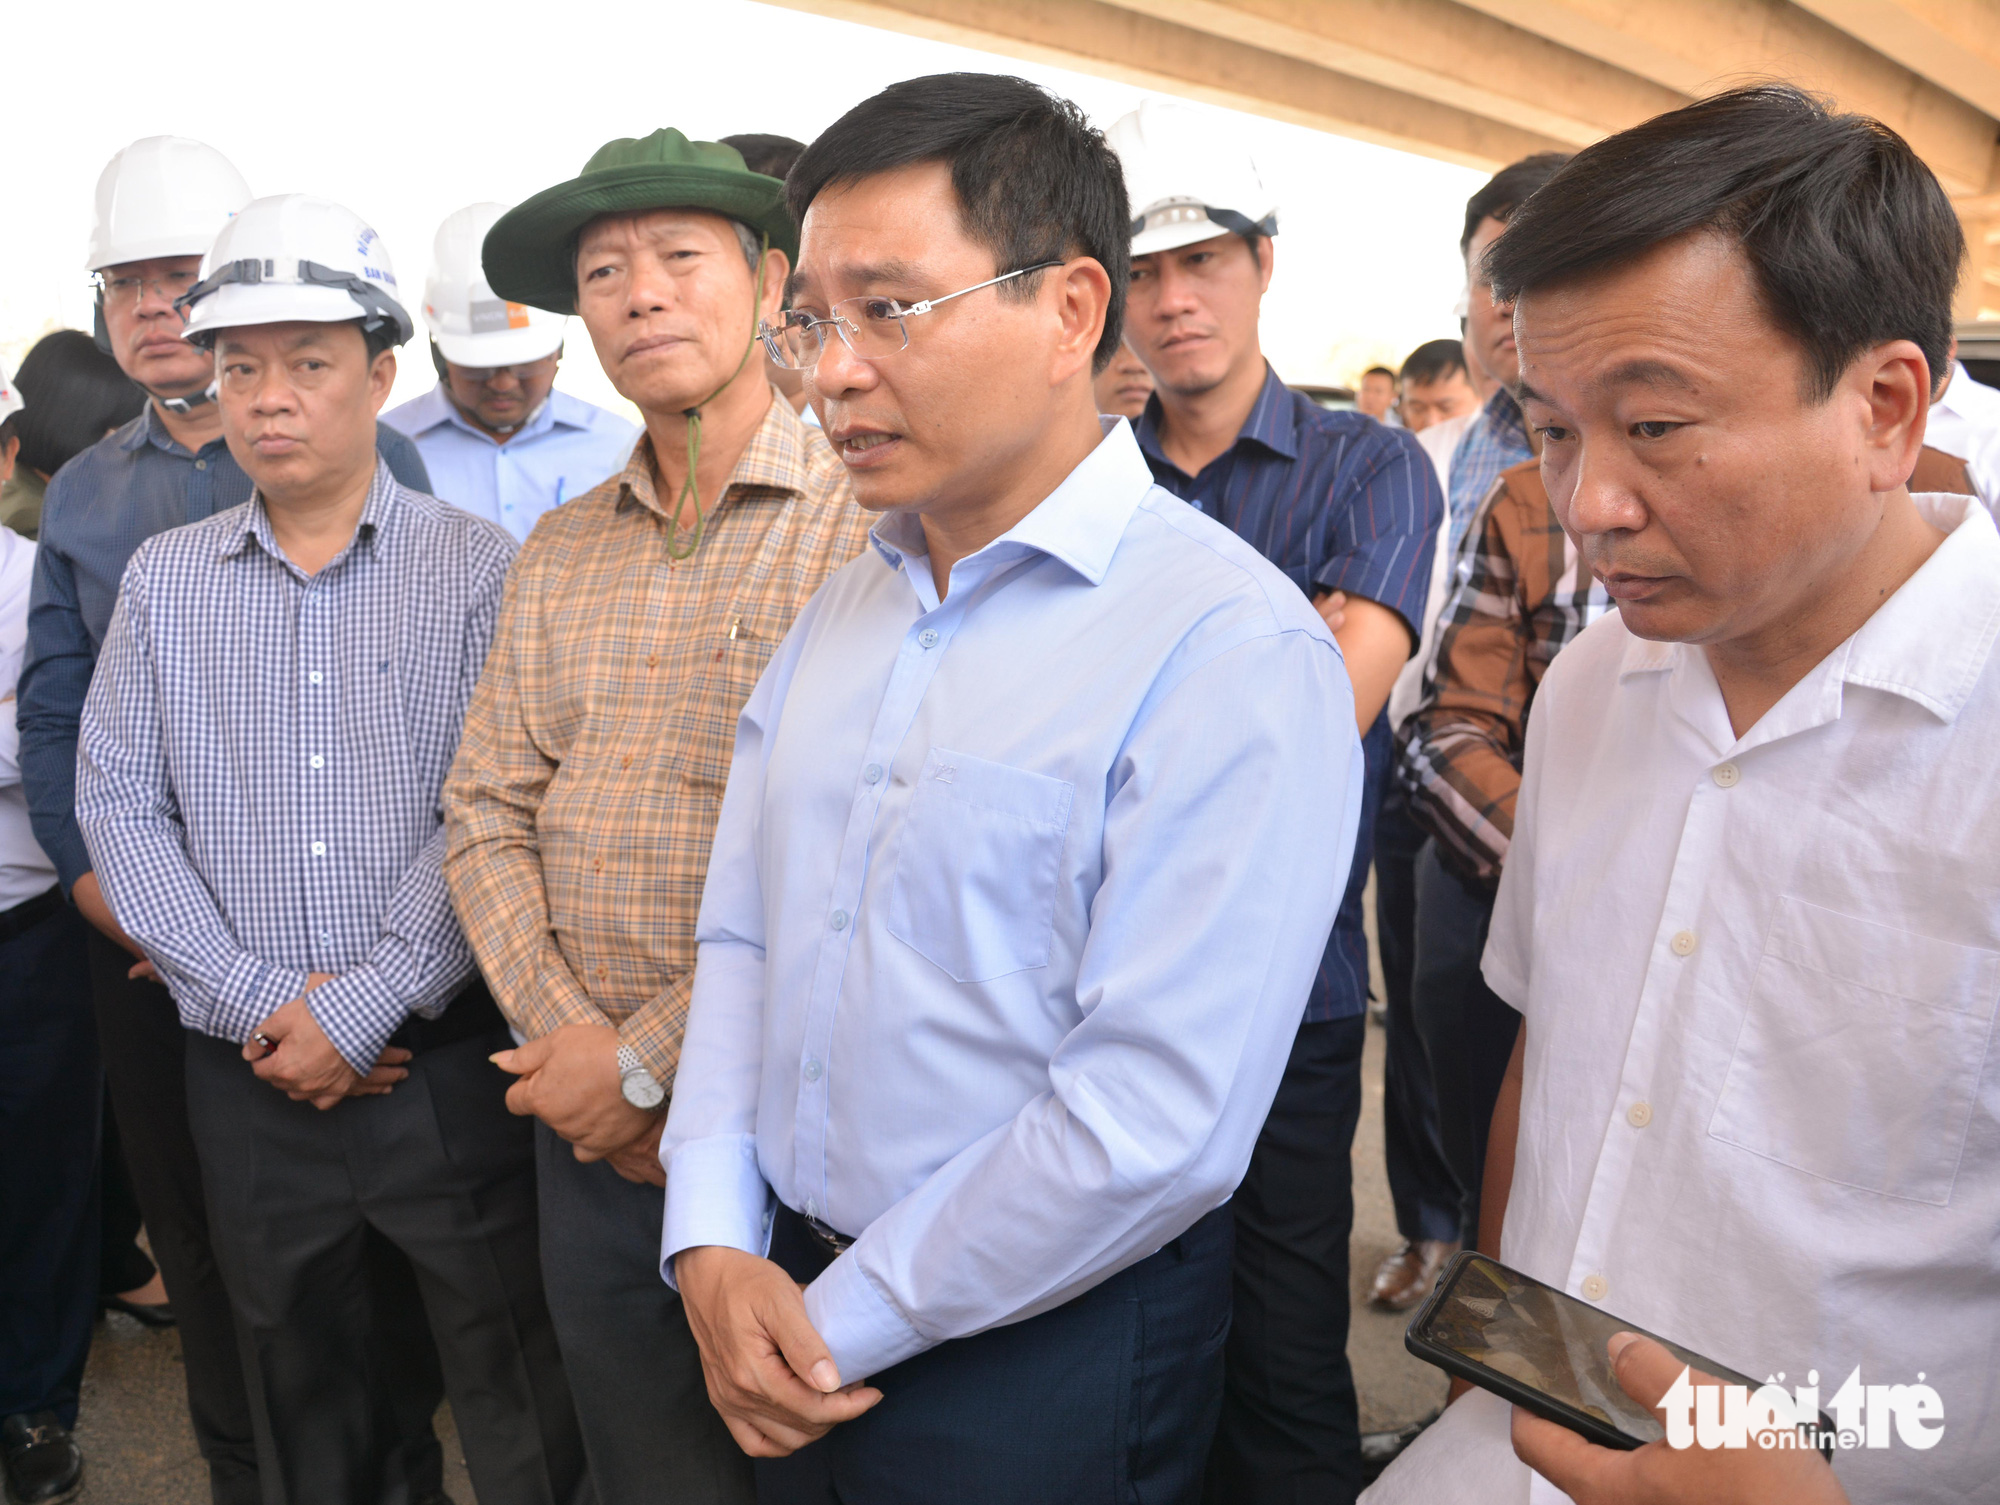 Bộ trưởng Nguyễn Văn Thắng (giữa) chỉ đạo ngoài công trường - Ảnh: ĐỨC TRONG